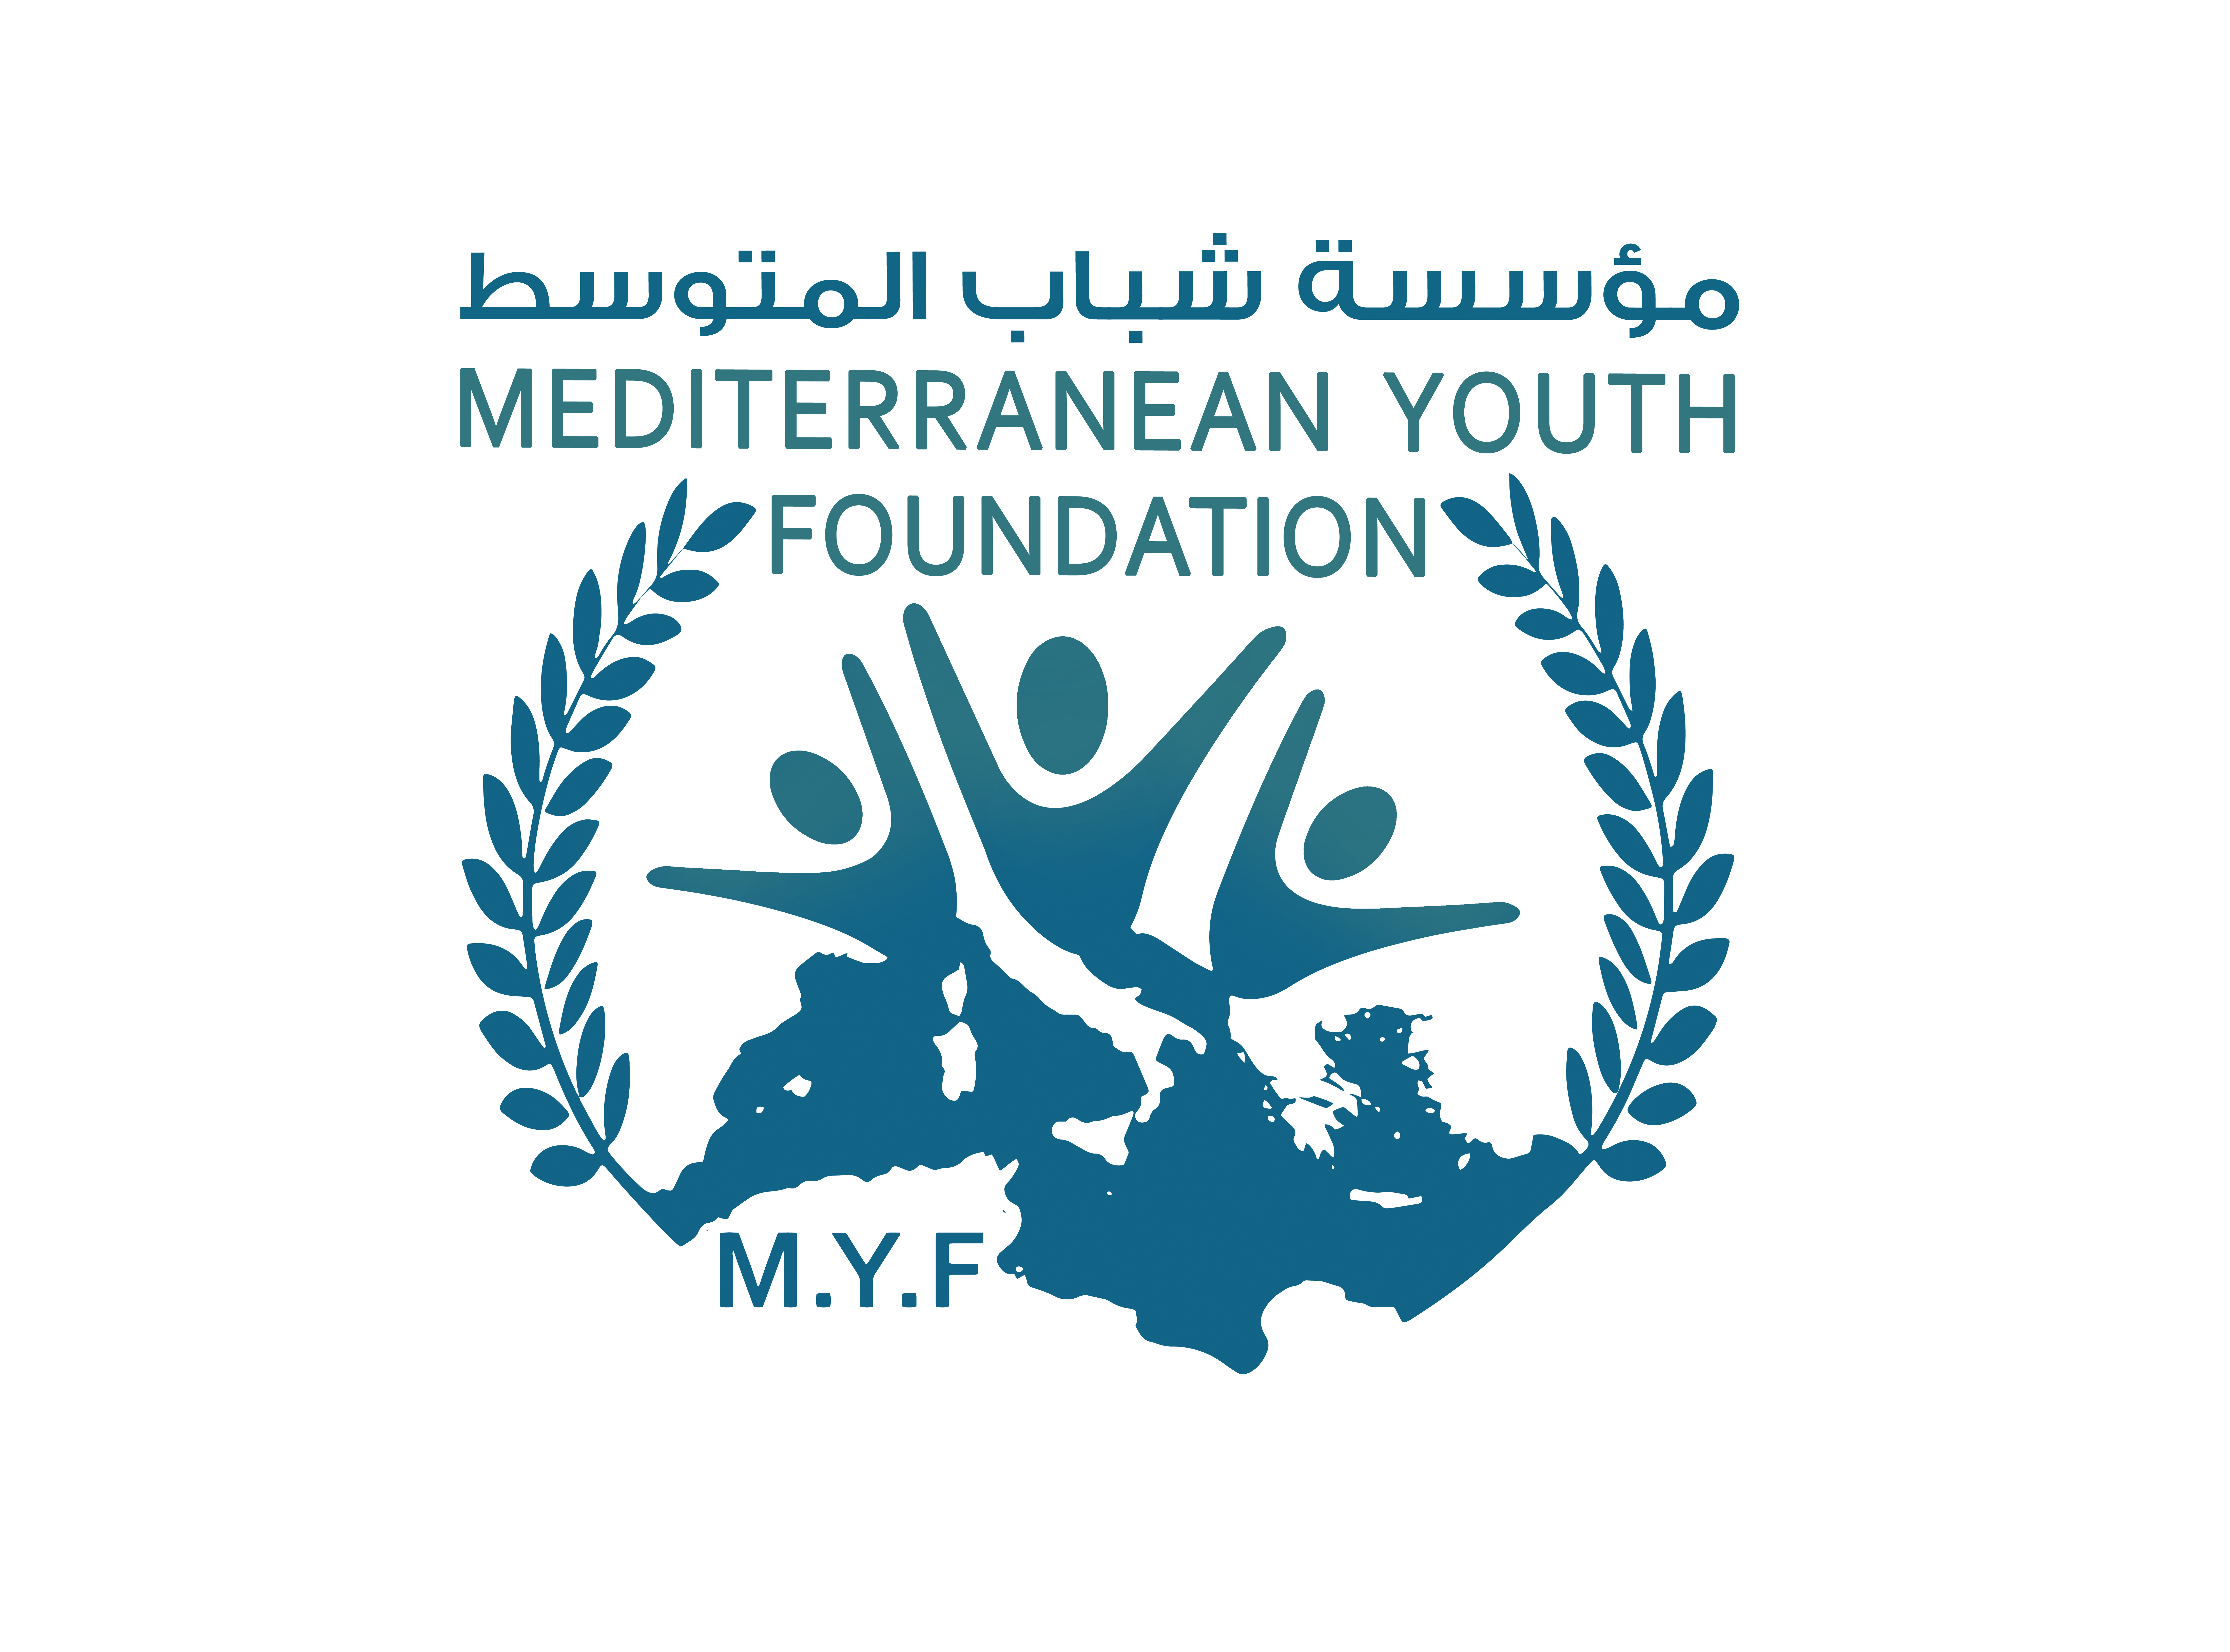 Fondation de la jeunesse méditerranéenne